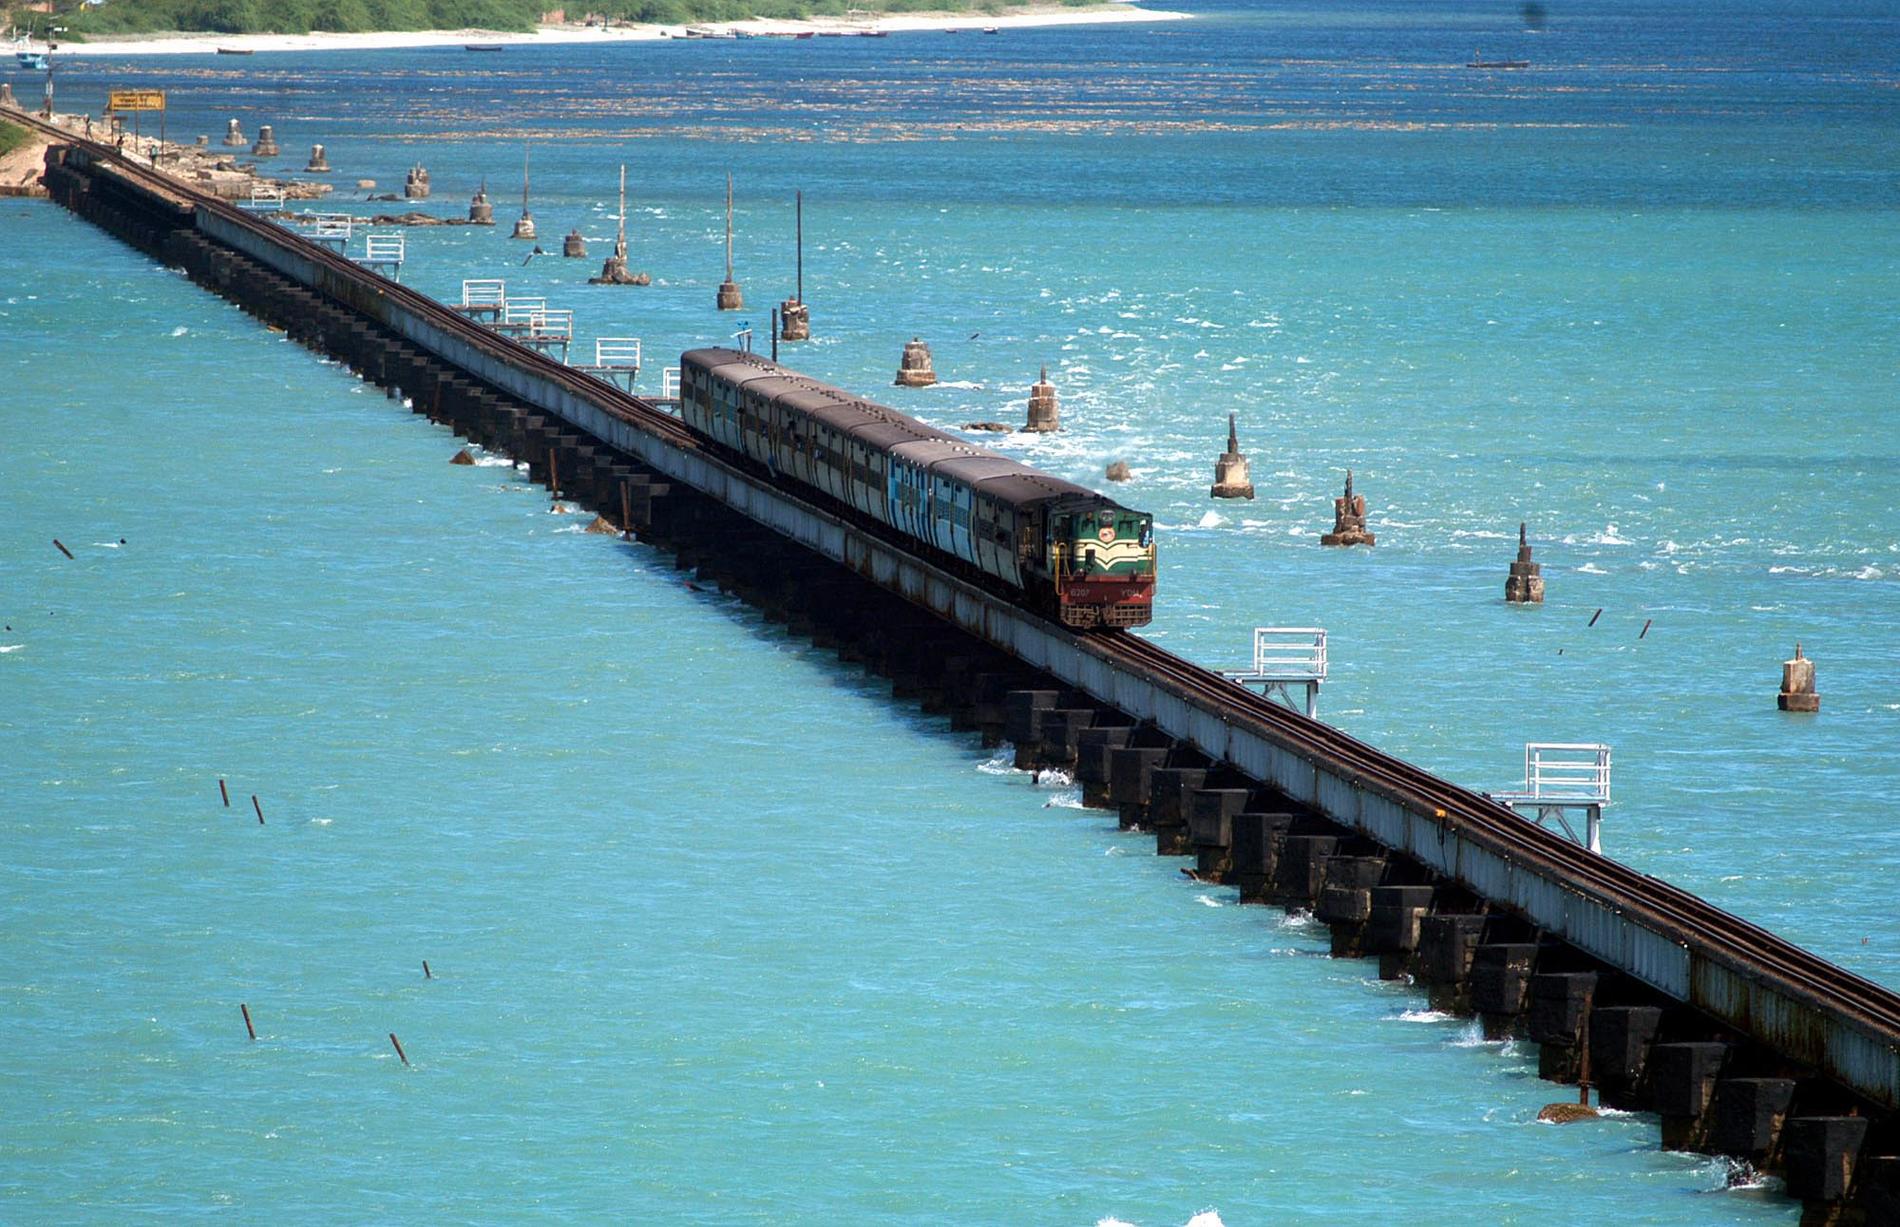 Pamban Bridge, Indien Staden Rameswaram på Pamban Island förbinds med den indiska fastlandet via en 2,5 km lång järnvägsbro. Rameswaram är en helig hinduisk plats och många pilgrimer tar tåget från närbelägna Chennai.
 Kolla in billigaste flygen till Indien här.